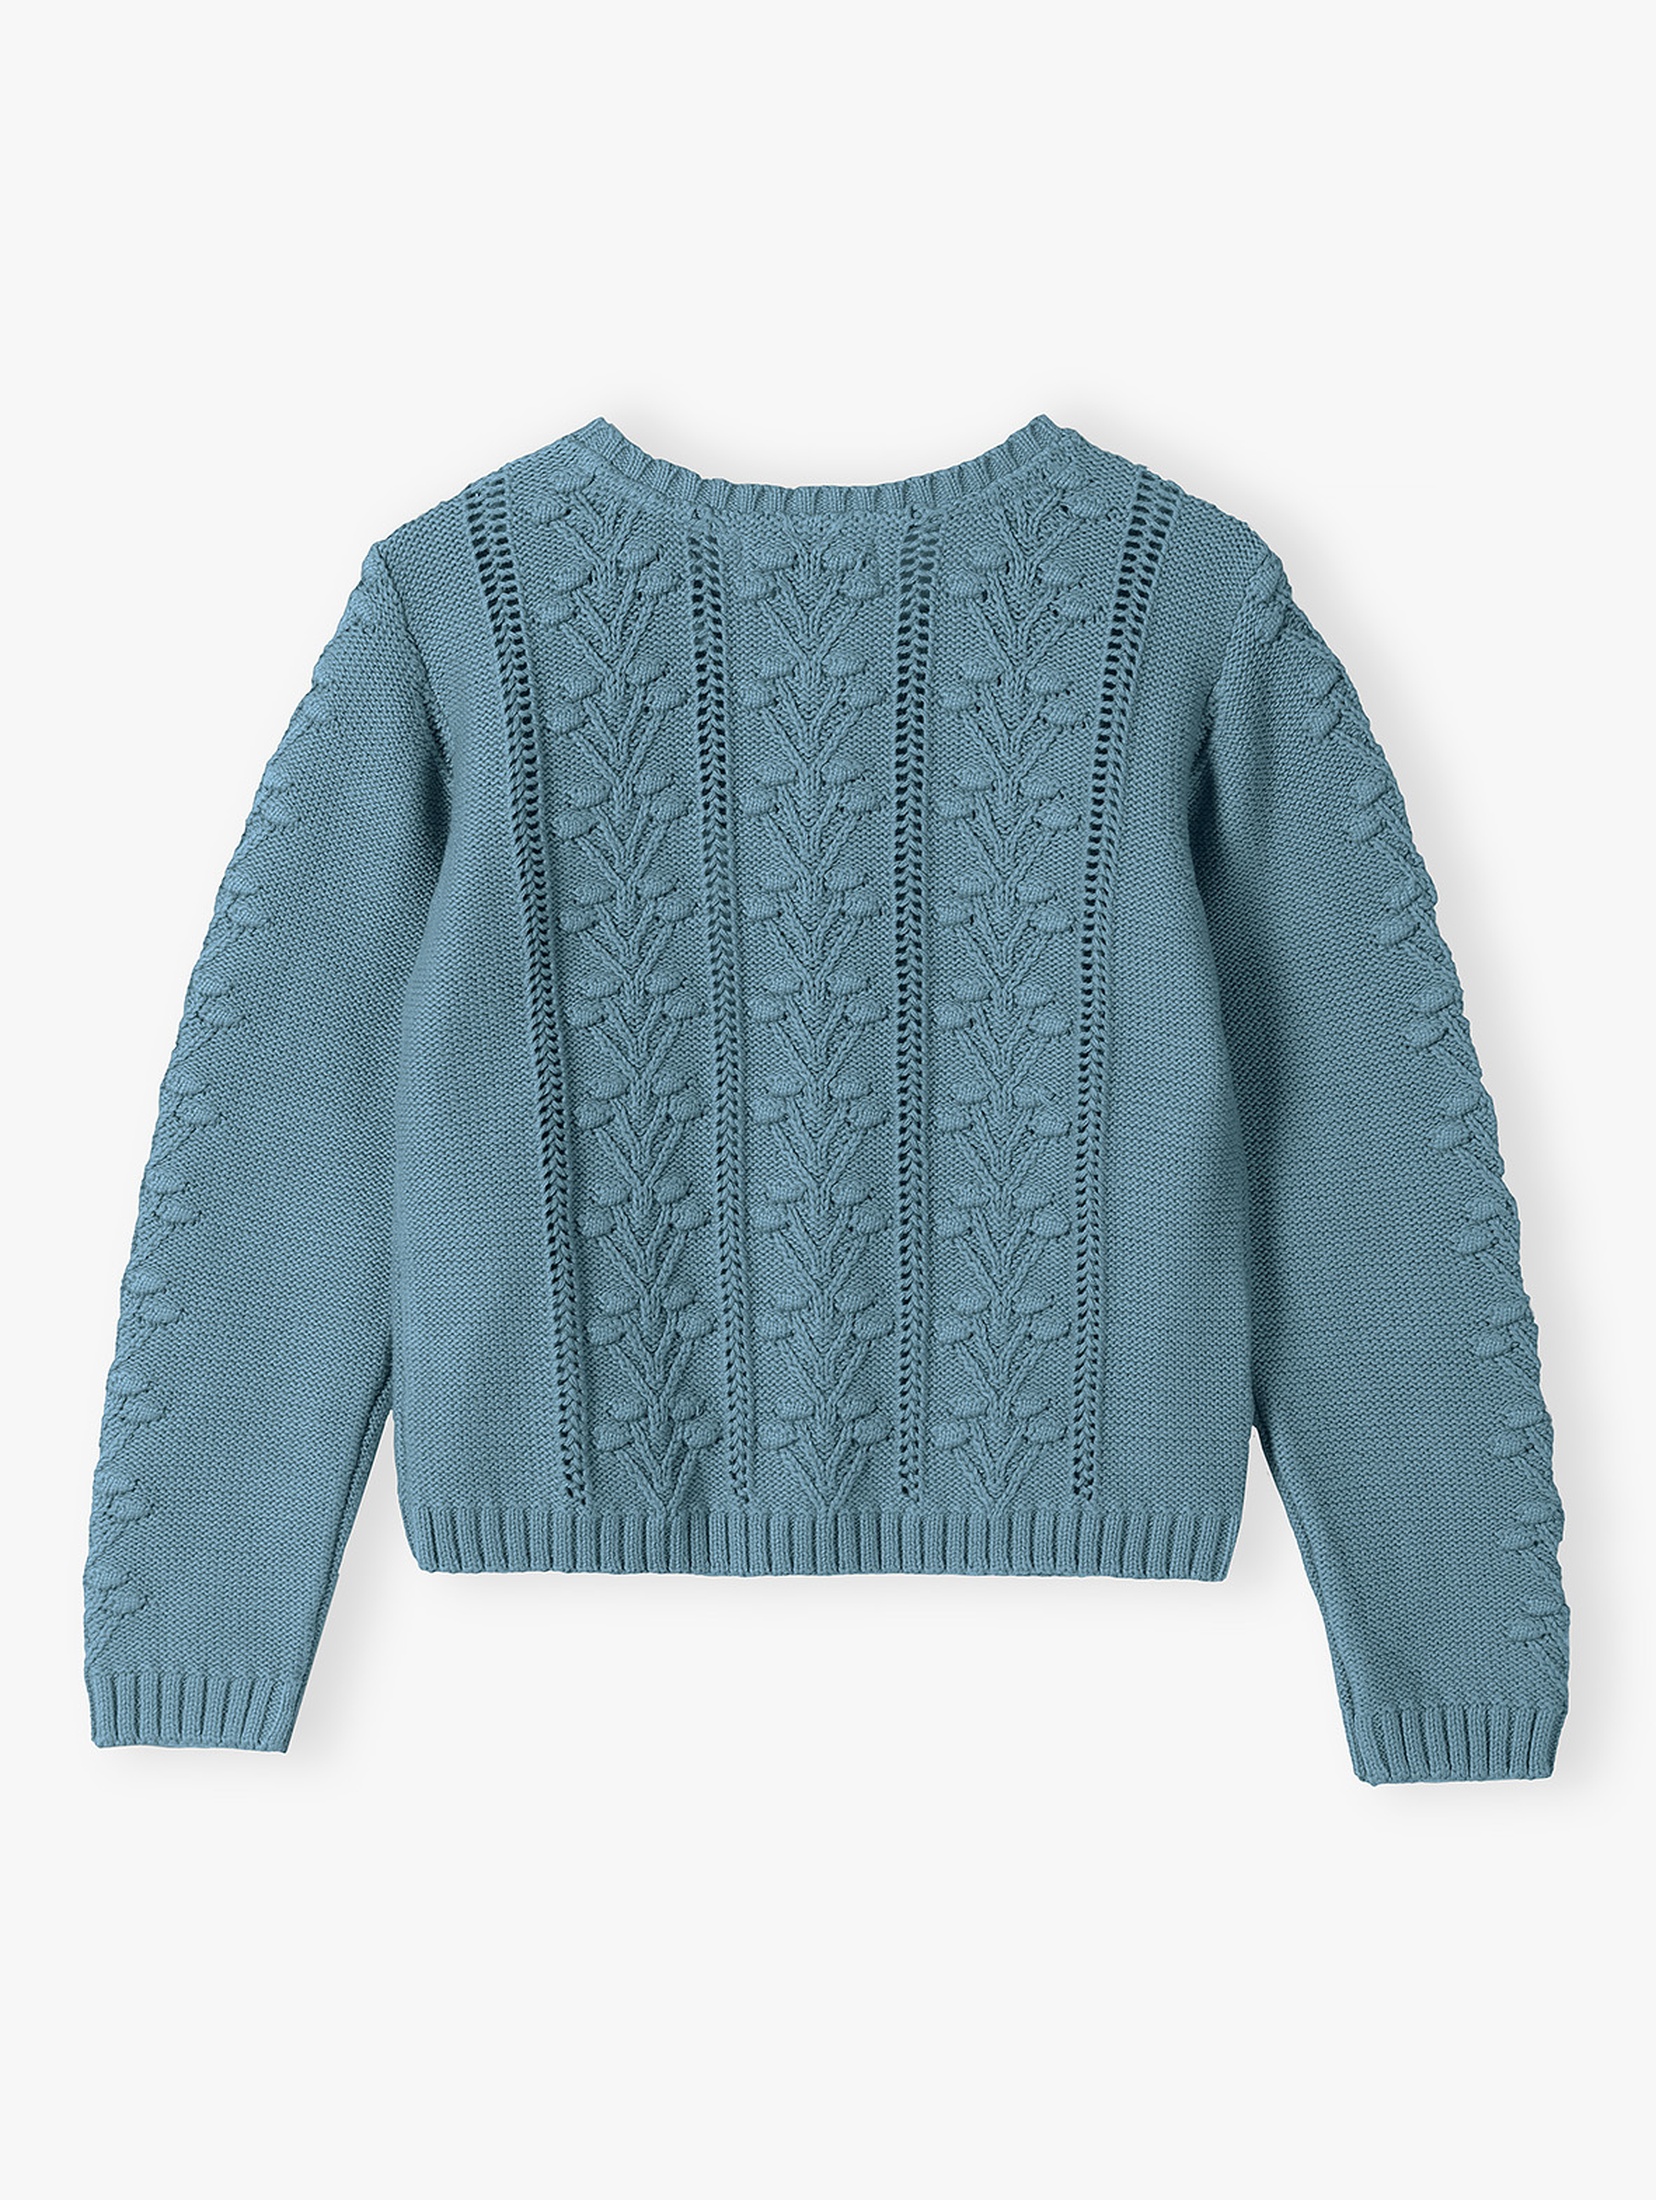 Sweter dziewczęcy - niebieski zapinany na guziki